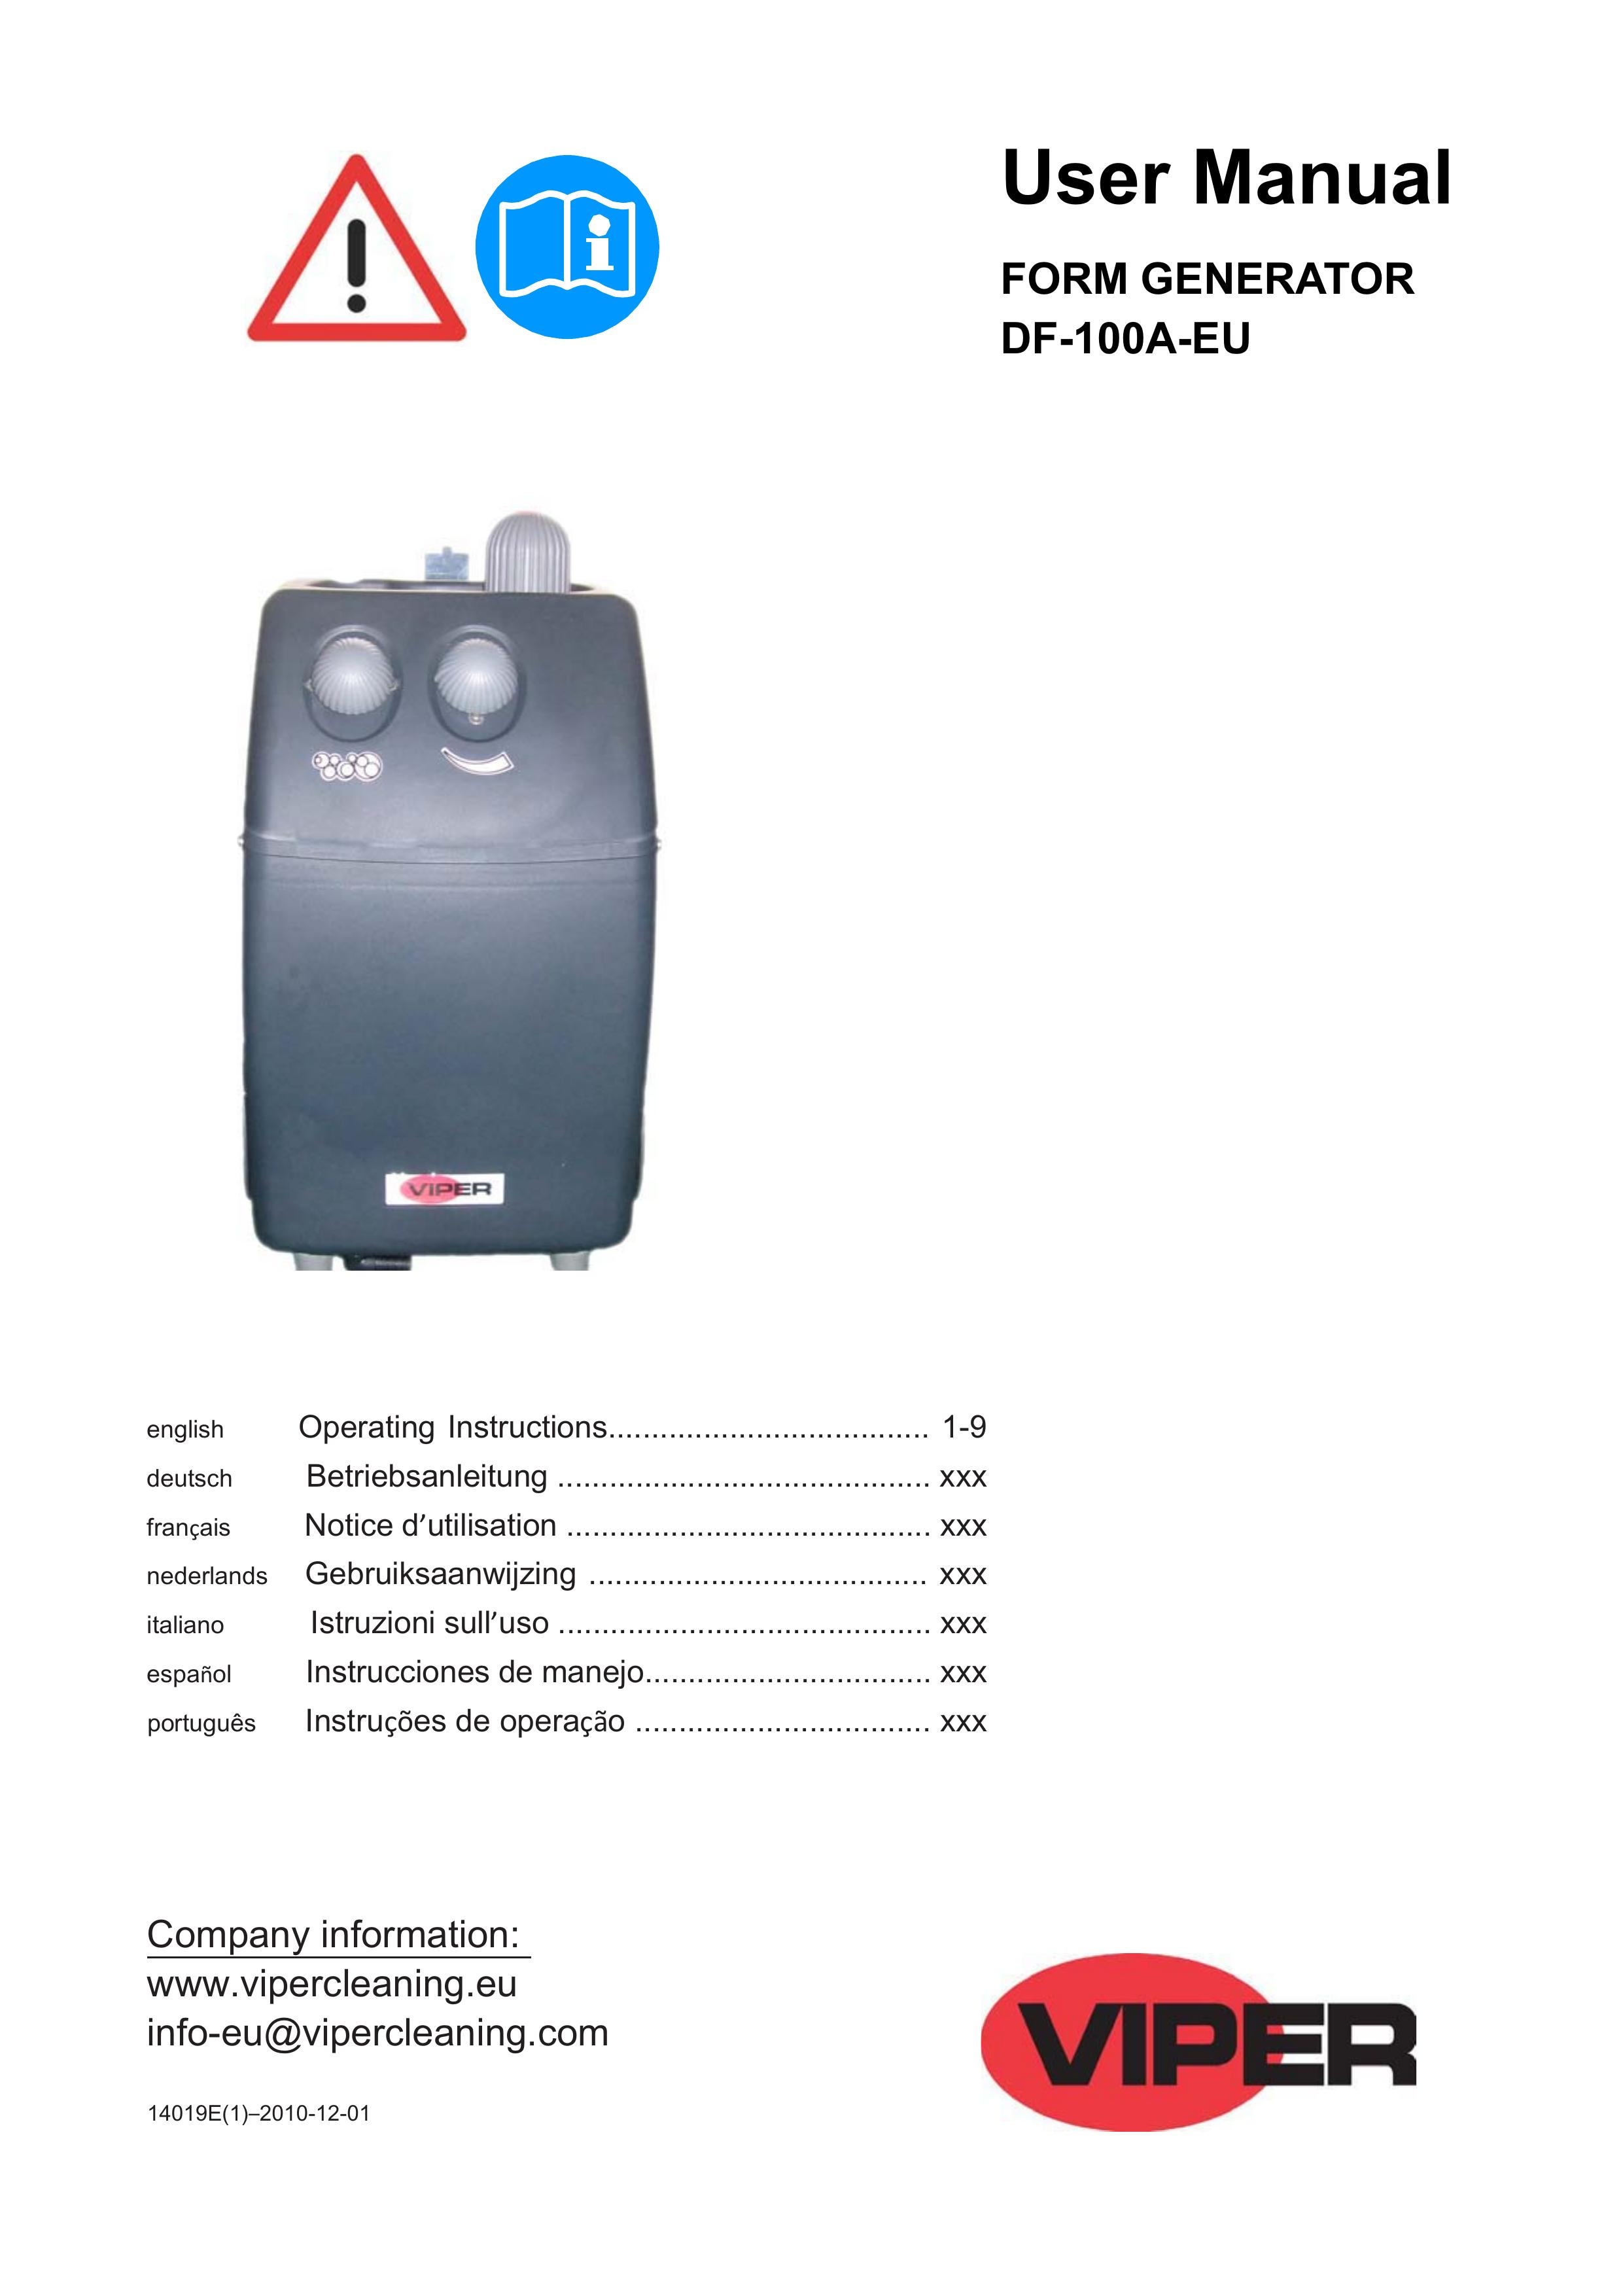 Viper DF-100A-EU Portable Generator User Manual